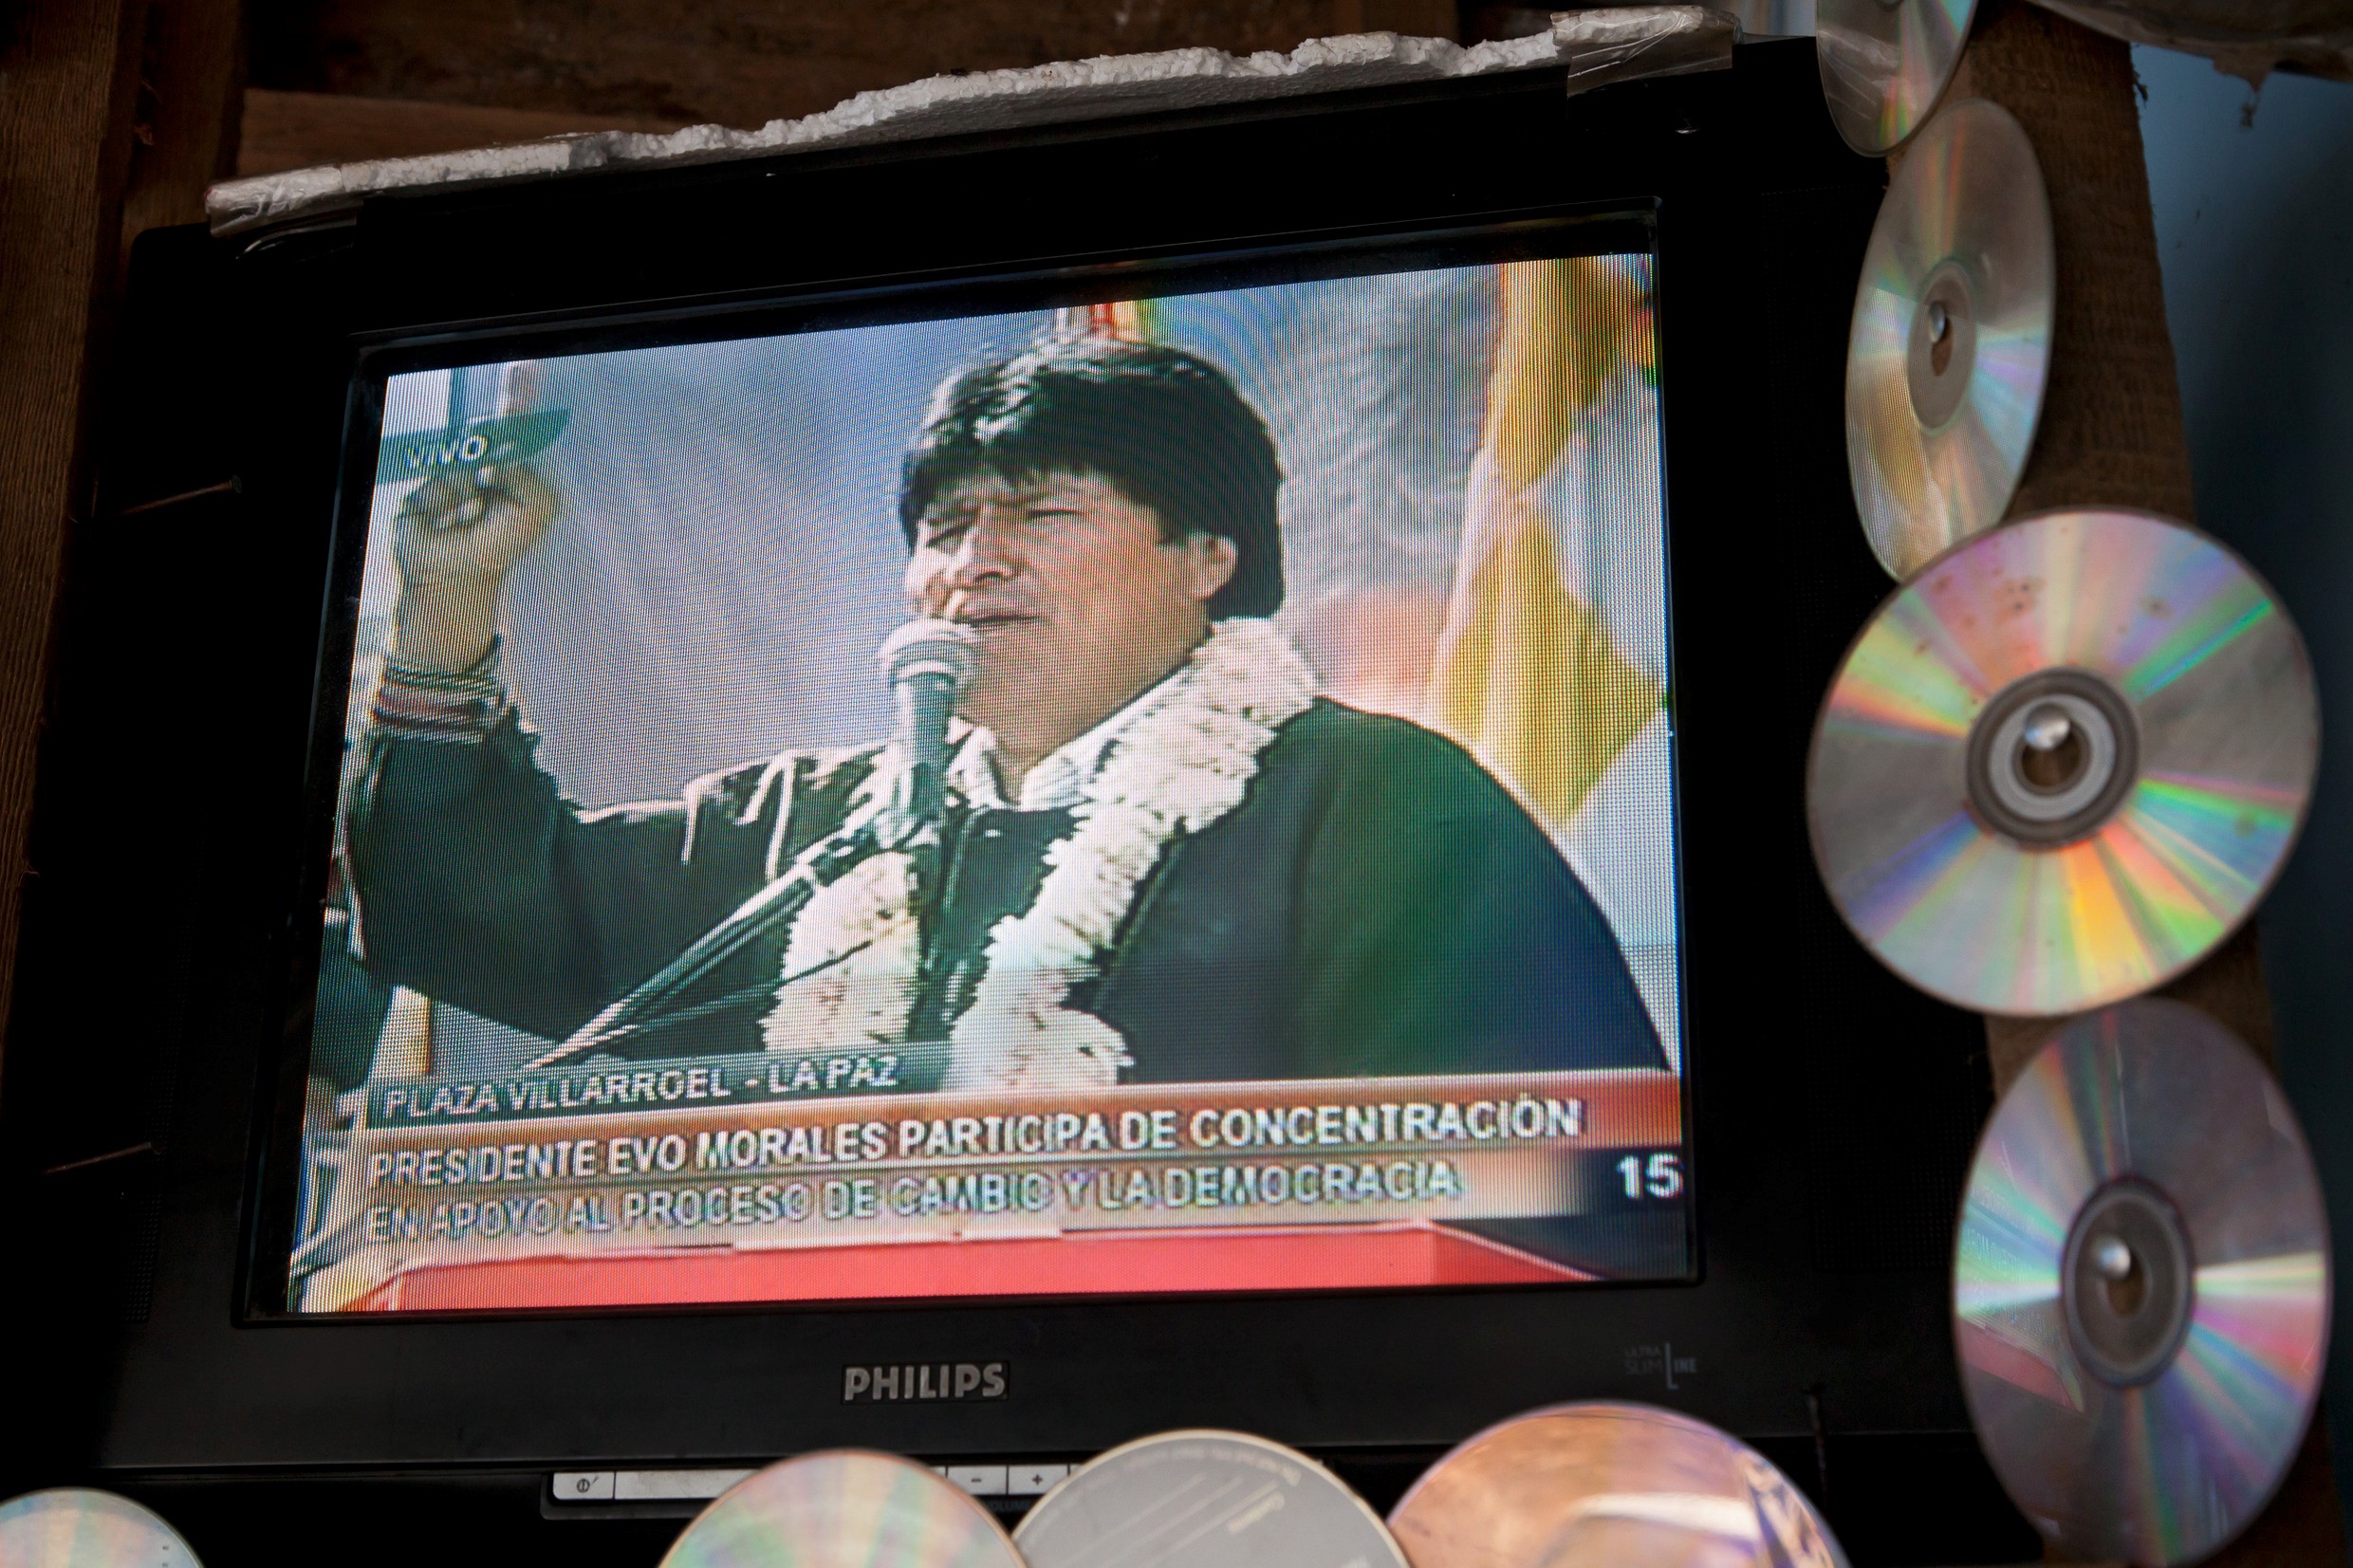 Evo Morales, seit zwölf Jahren Präsident von Bolivien, will erneut kandidieren. Foto: Adveniat/Jürgen Escher